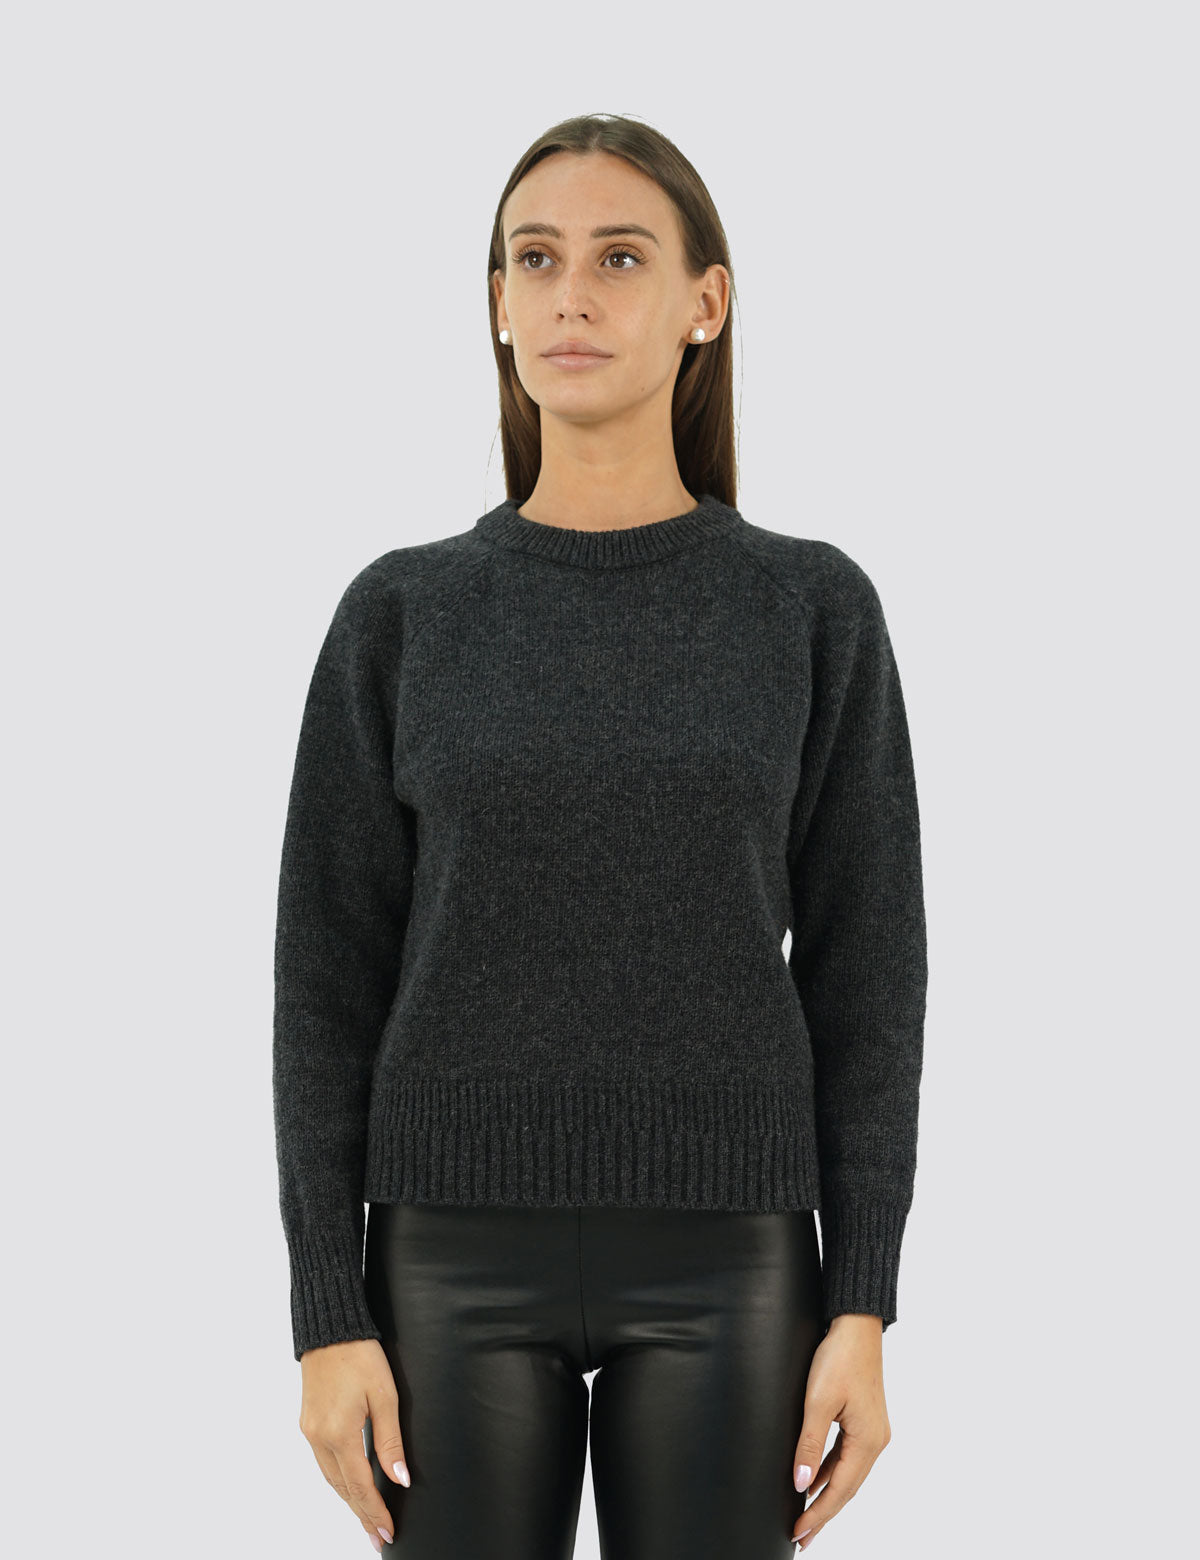 Eleganter Raglan-Pullover mit Rundhalsausschnitt – Damen-Winterpullover – Herbst/Winter – recycelte Wollmischung – hergestellt in Italien – Brunella Gori